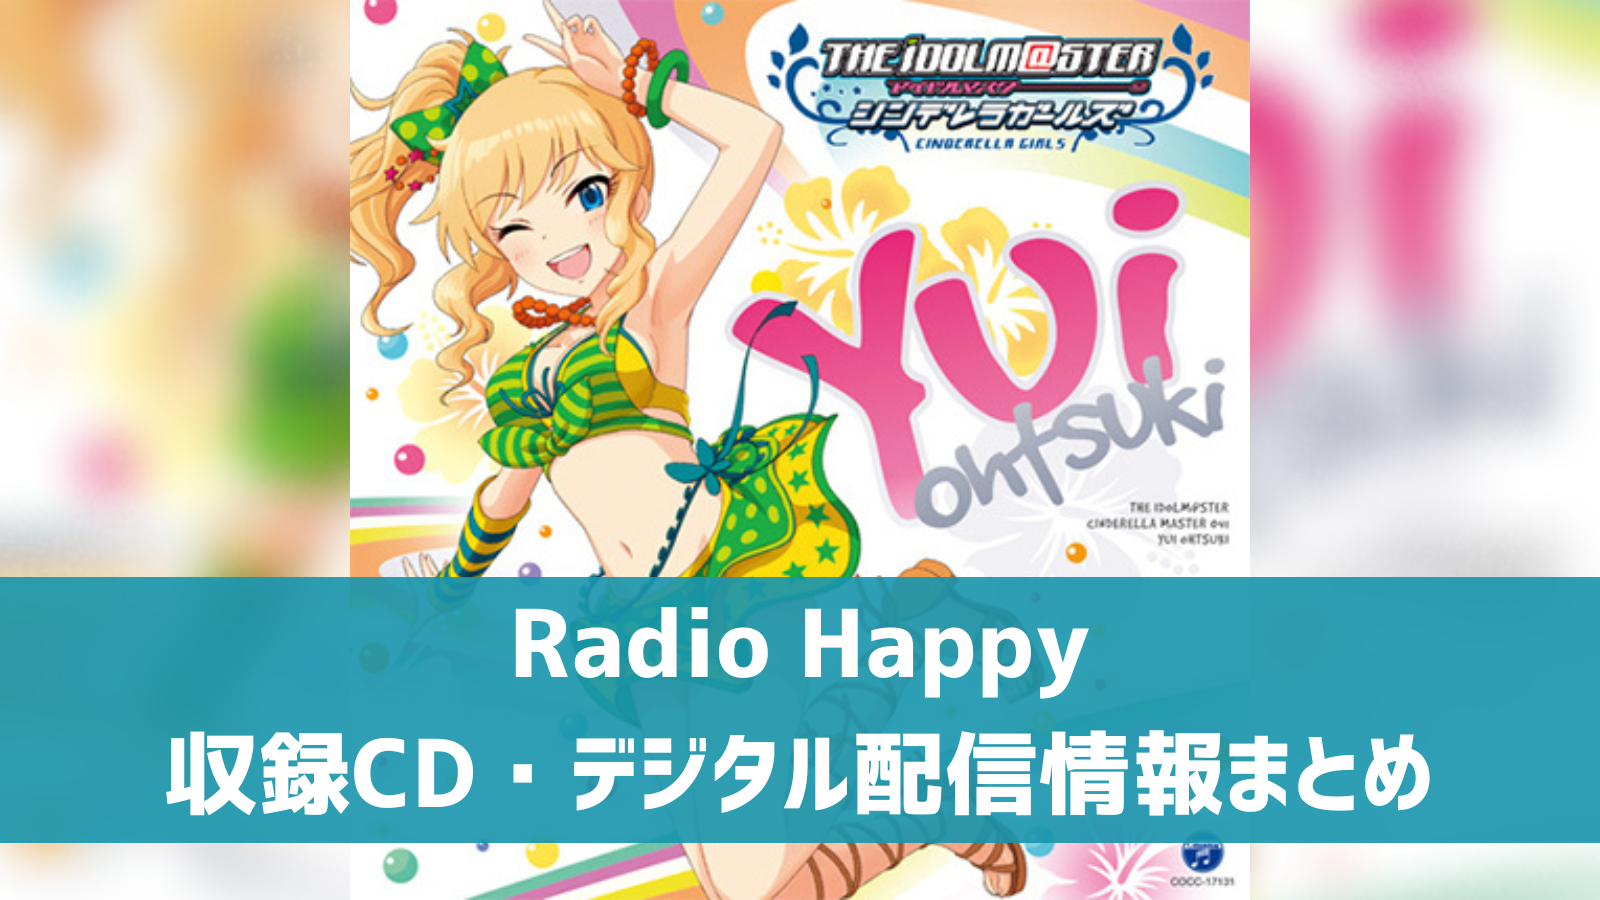 Radio Happy